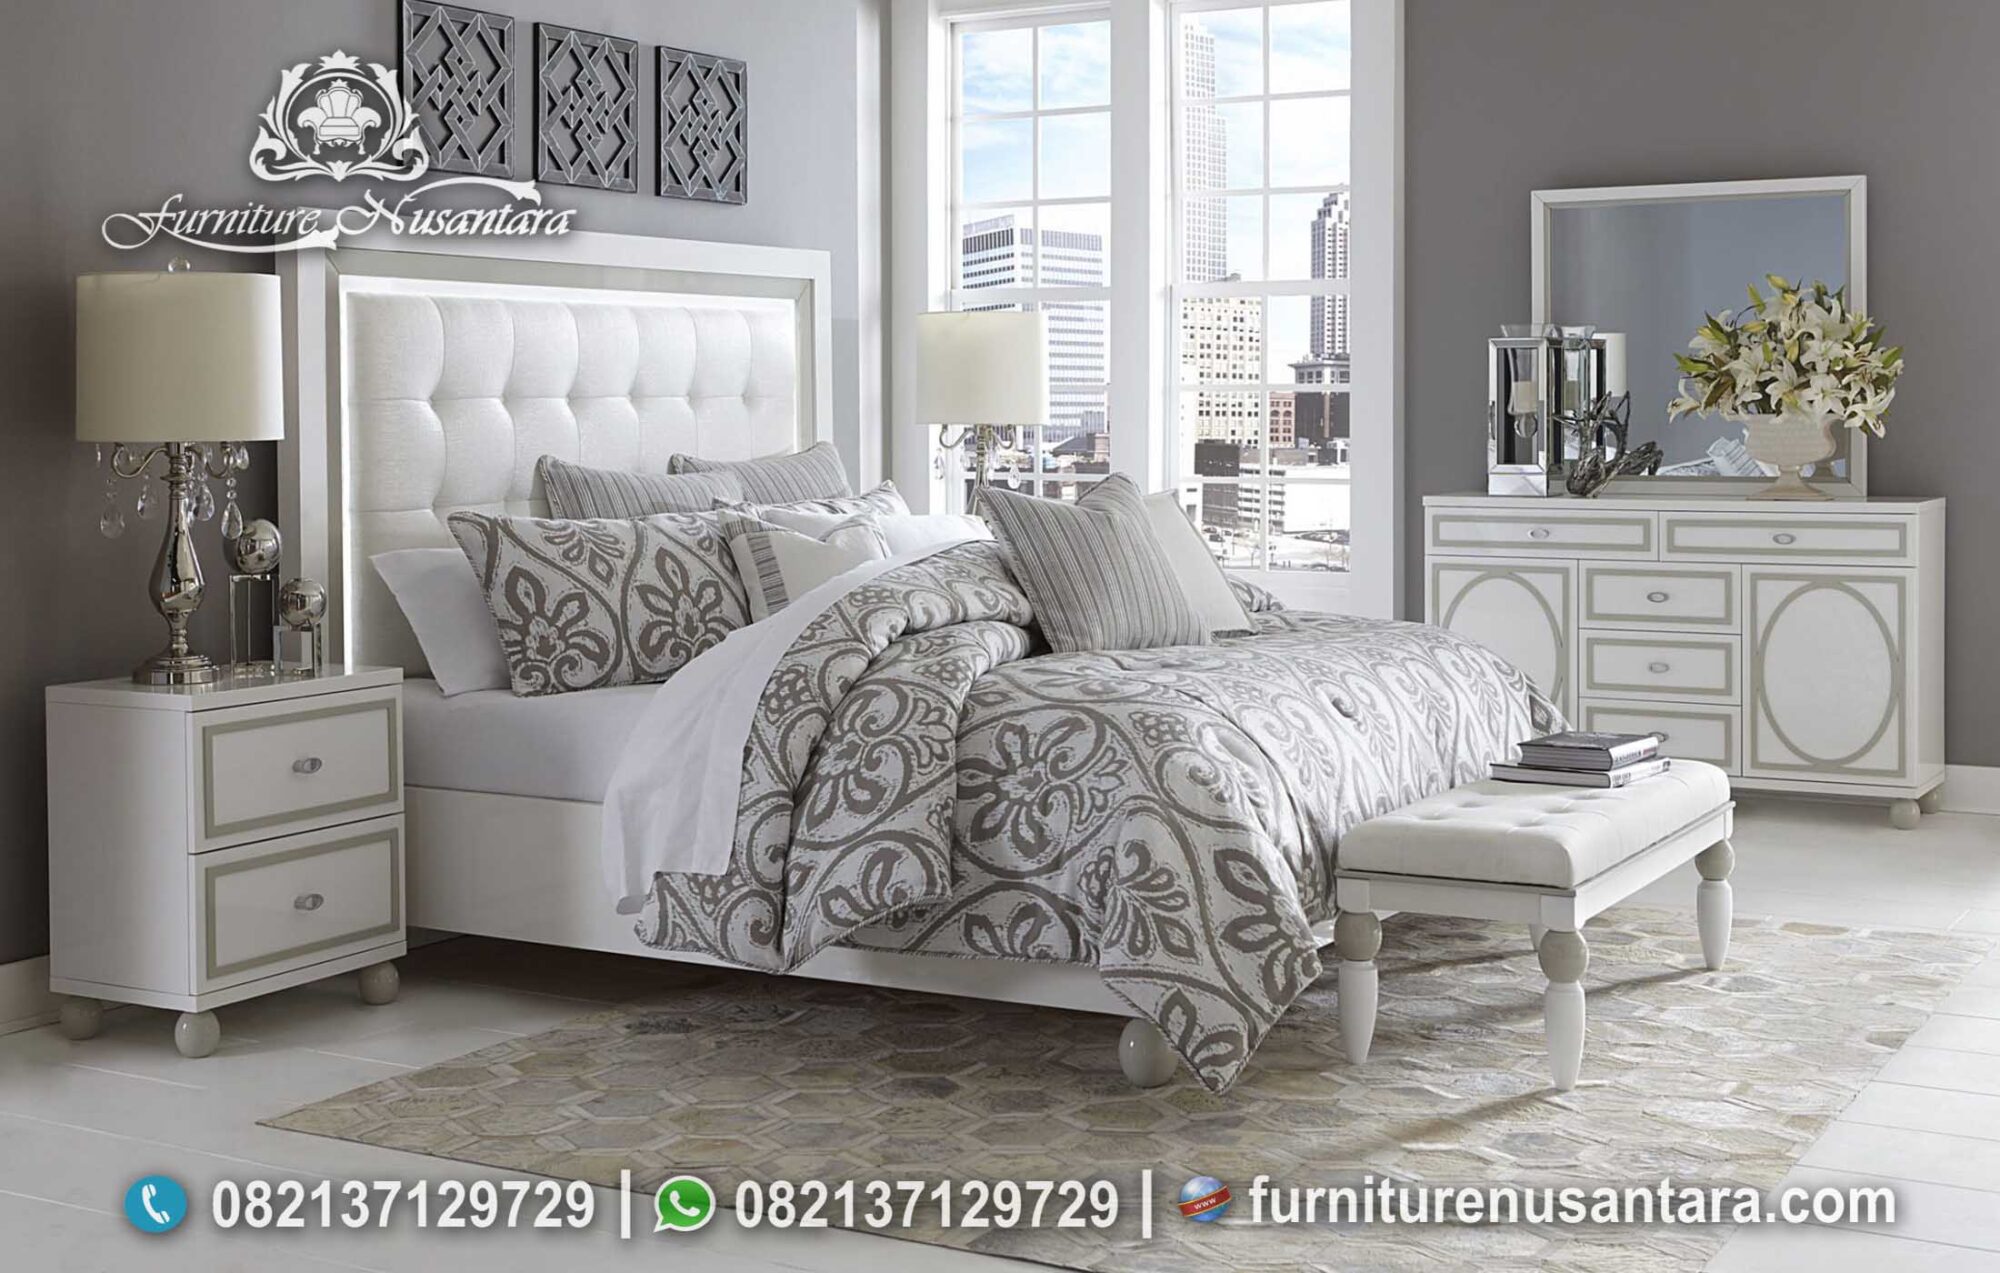 Desain Kamar Minimalis Terpopular Terbaru KS-218, Furniture Nusantara